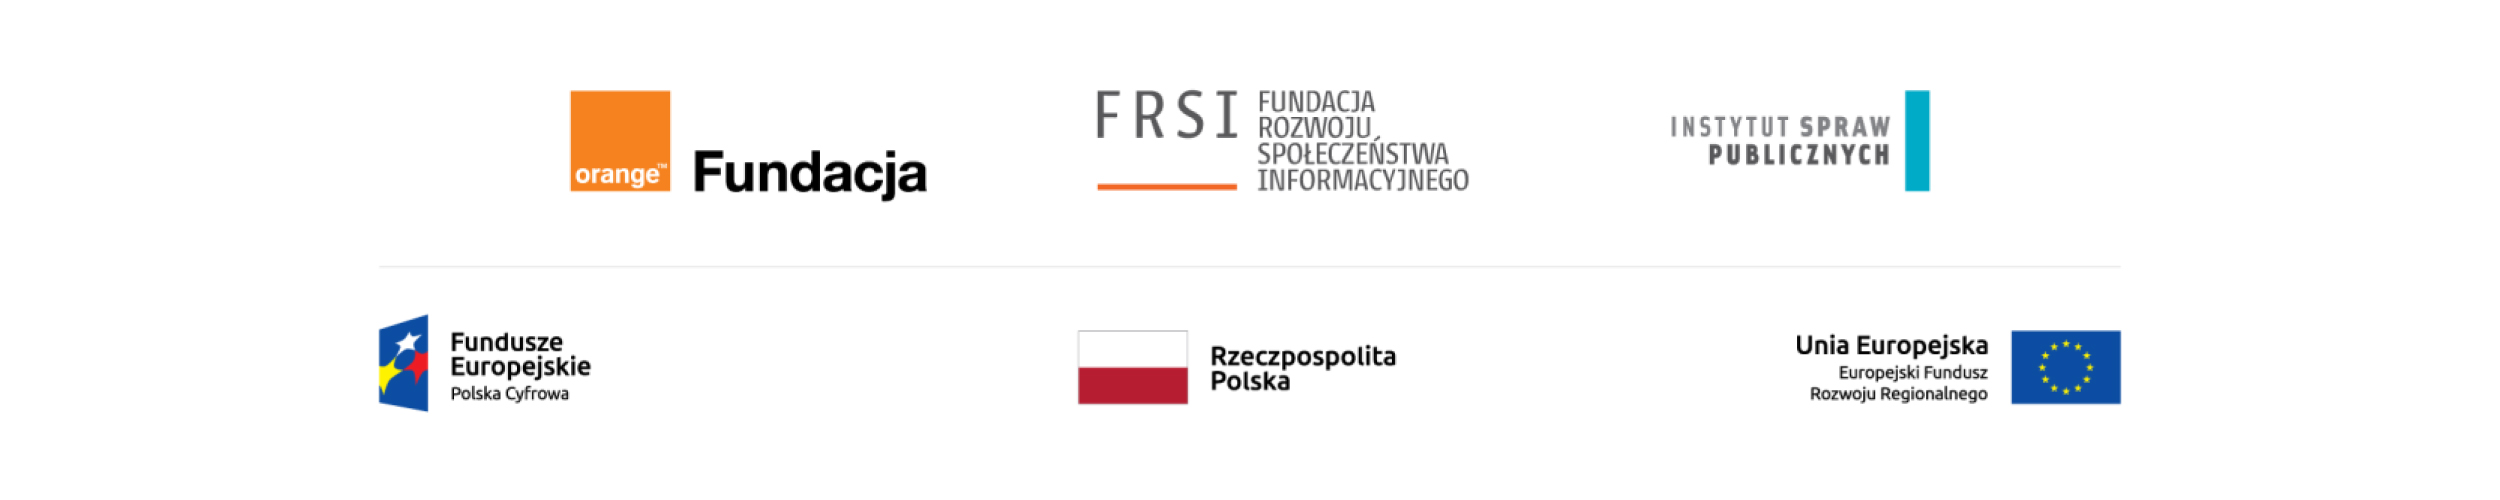 Na białym tle w dwóch linijkach znajdują się: (na górze) logo fundacji Orange, lofo Fundacji Rozwoju Społeczeństwa Informacyjnego, logo Instytutu Spraw Publicznych. Poniżej logo Funduszy Europejskich Polska Cyfrowa, Flaga Rzeczpospolitej Polskiej, Flaga Unii Europejskiej